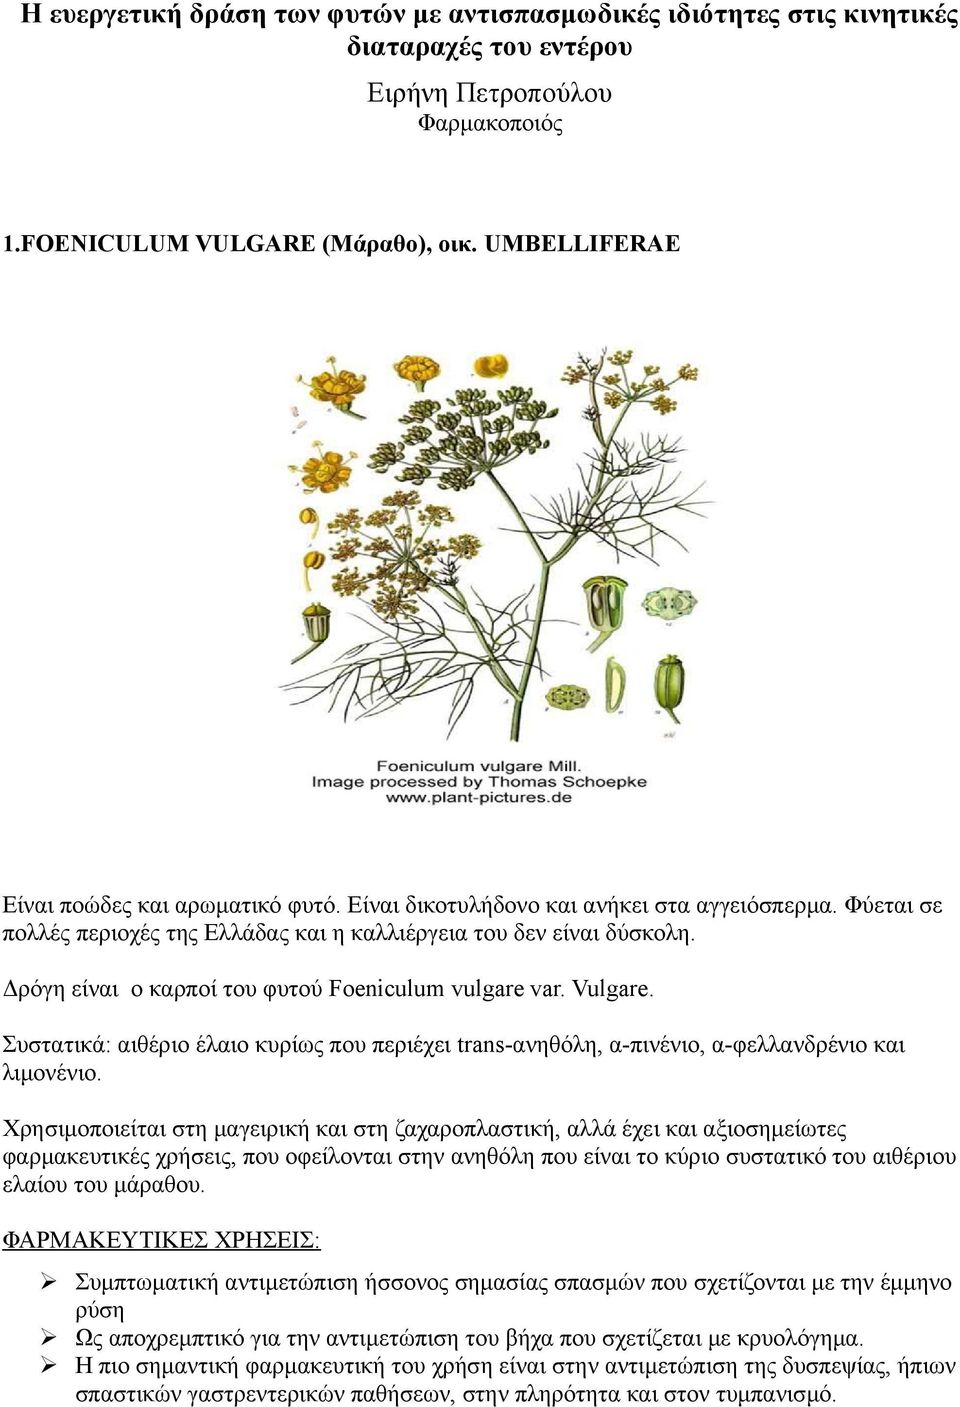 Δρόγη είναι ο καρποί του φυτού Foeniculum vulgare var. Vulgare. Συστατικά: αιθέριο έλαιο κυρίως που περιέχει trans-ανηθόλη, α-πινένιο, α-φελλανδρένιο και λιμονένιο.